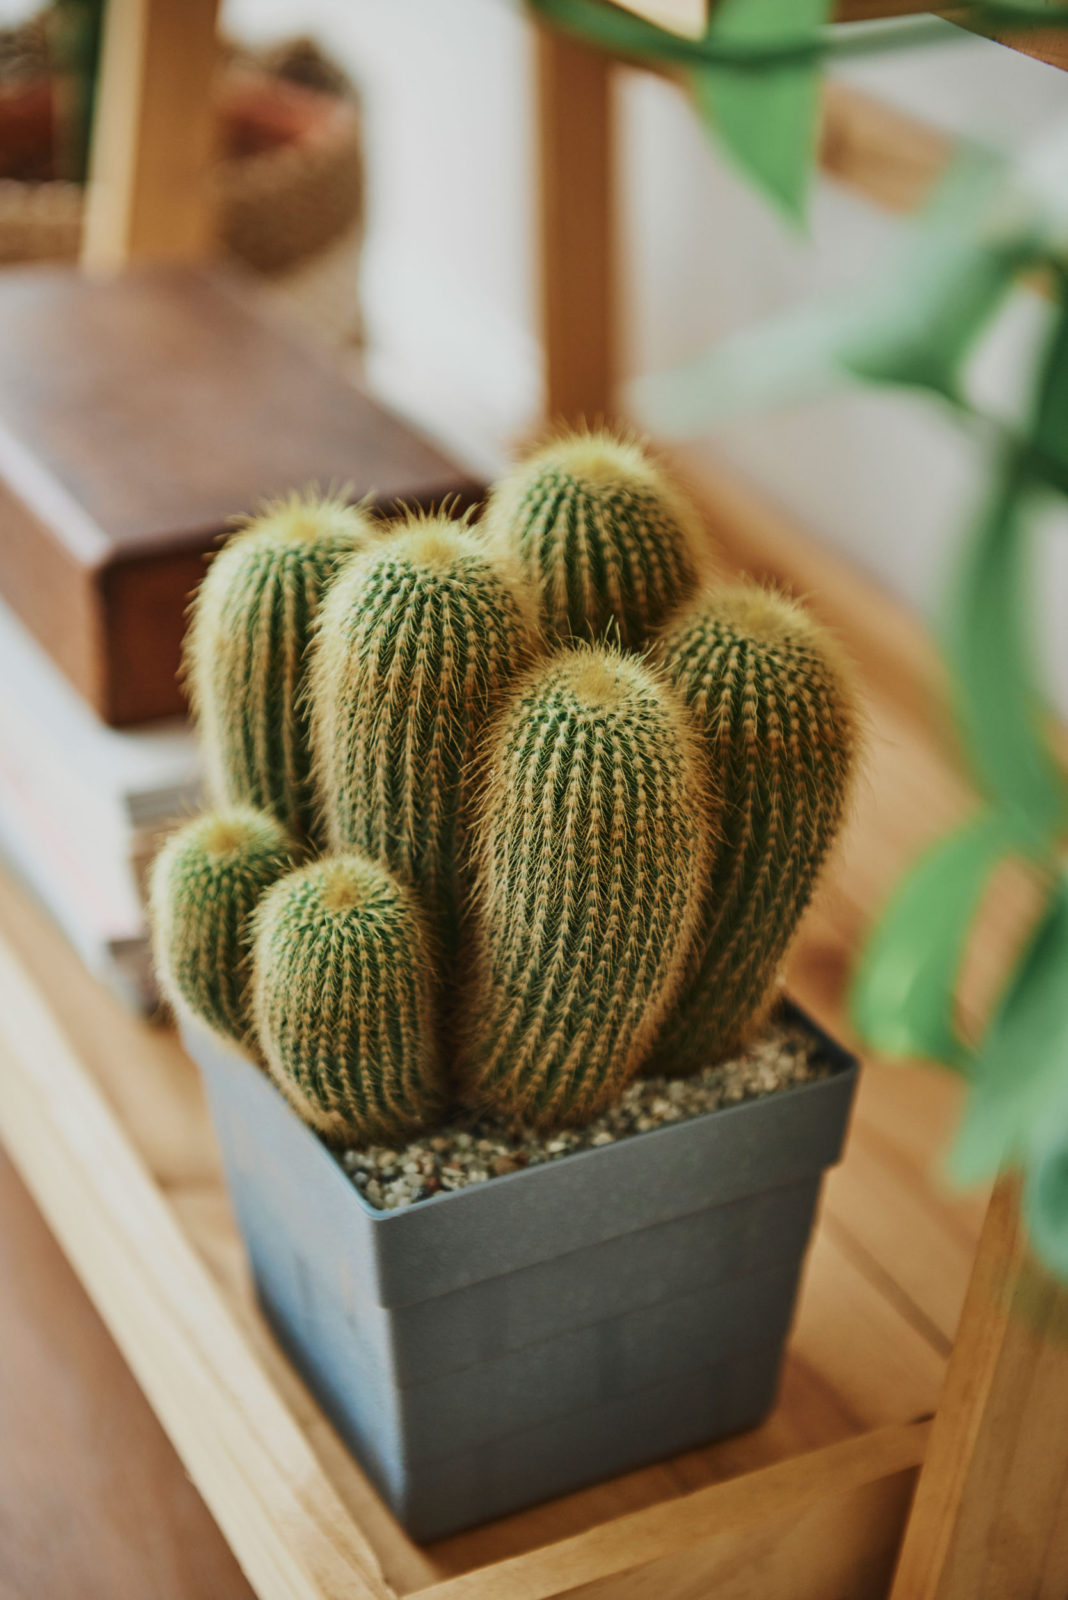 Cactus en una maceta decorando un espacio.